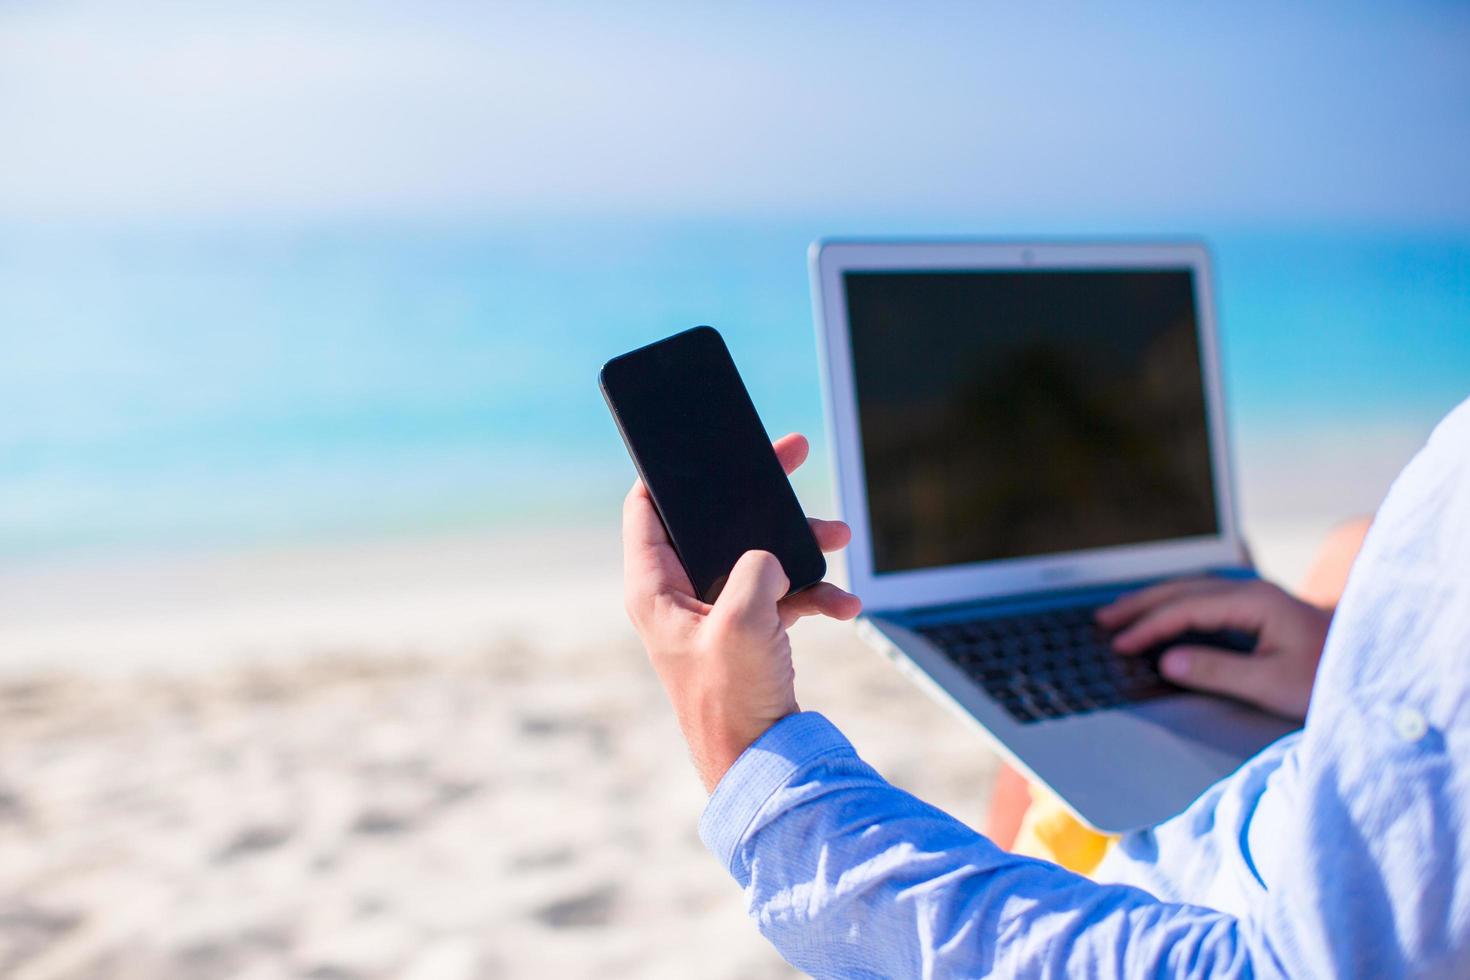 primo piano di una persona che utilizza un telefono e un laptop su una spiaggia foto